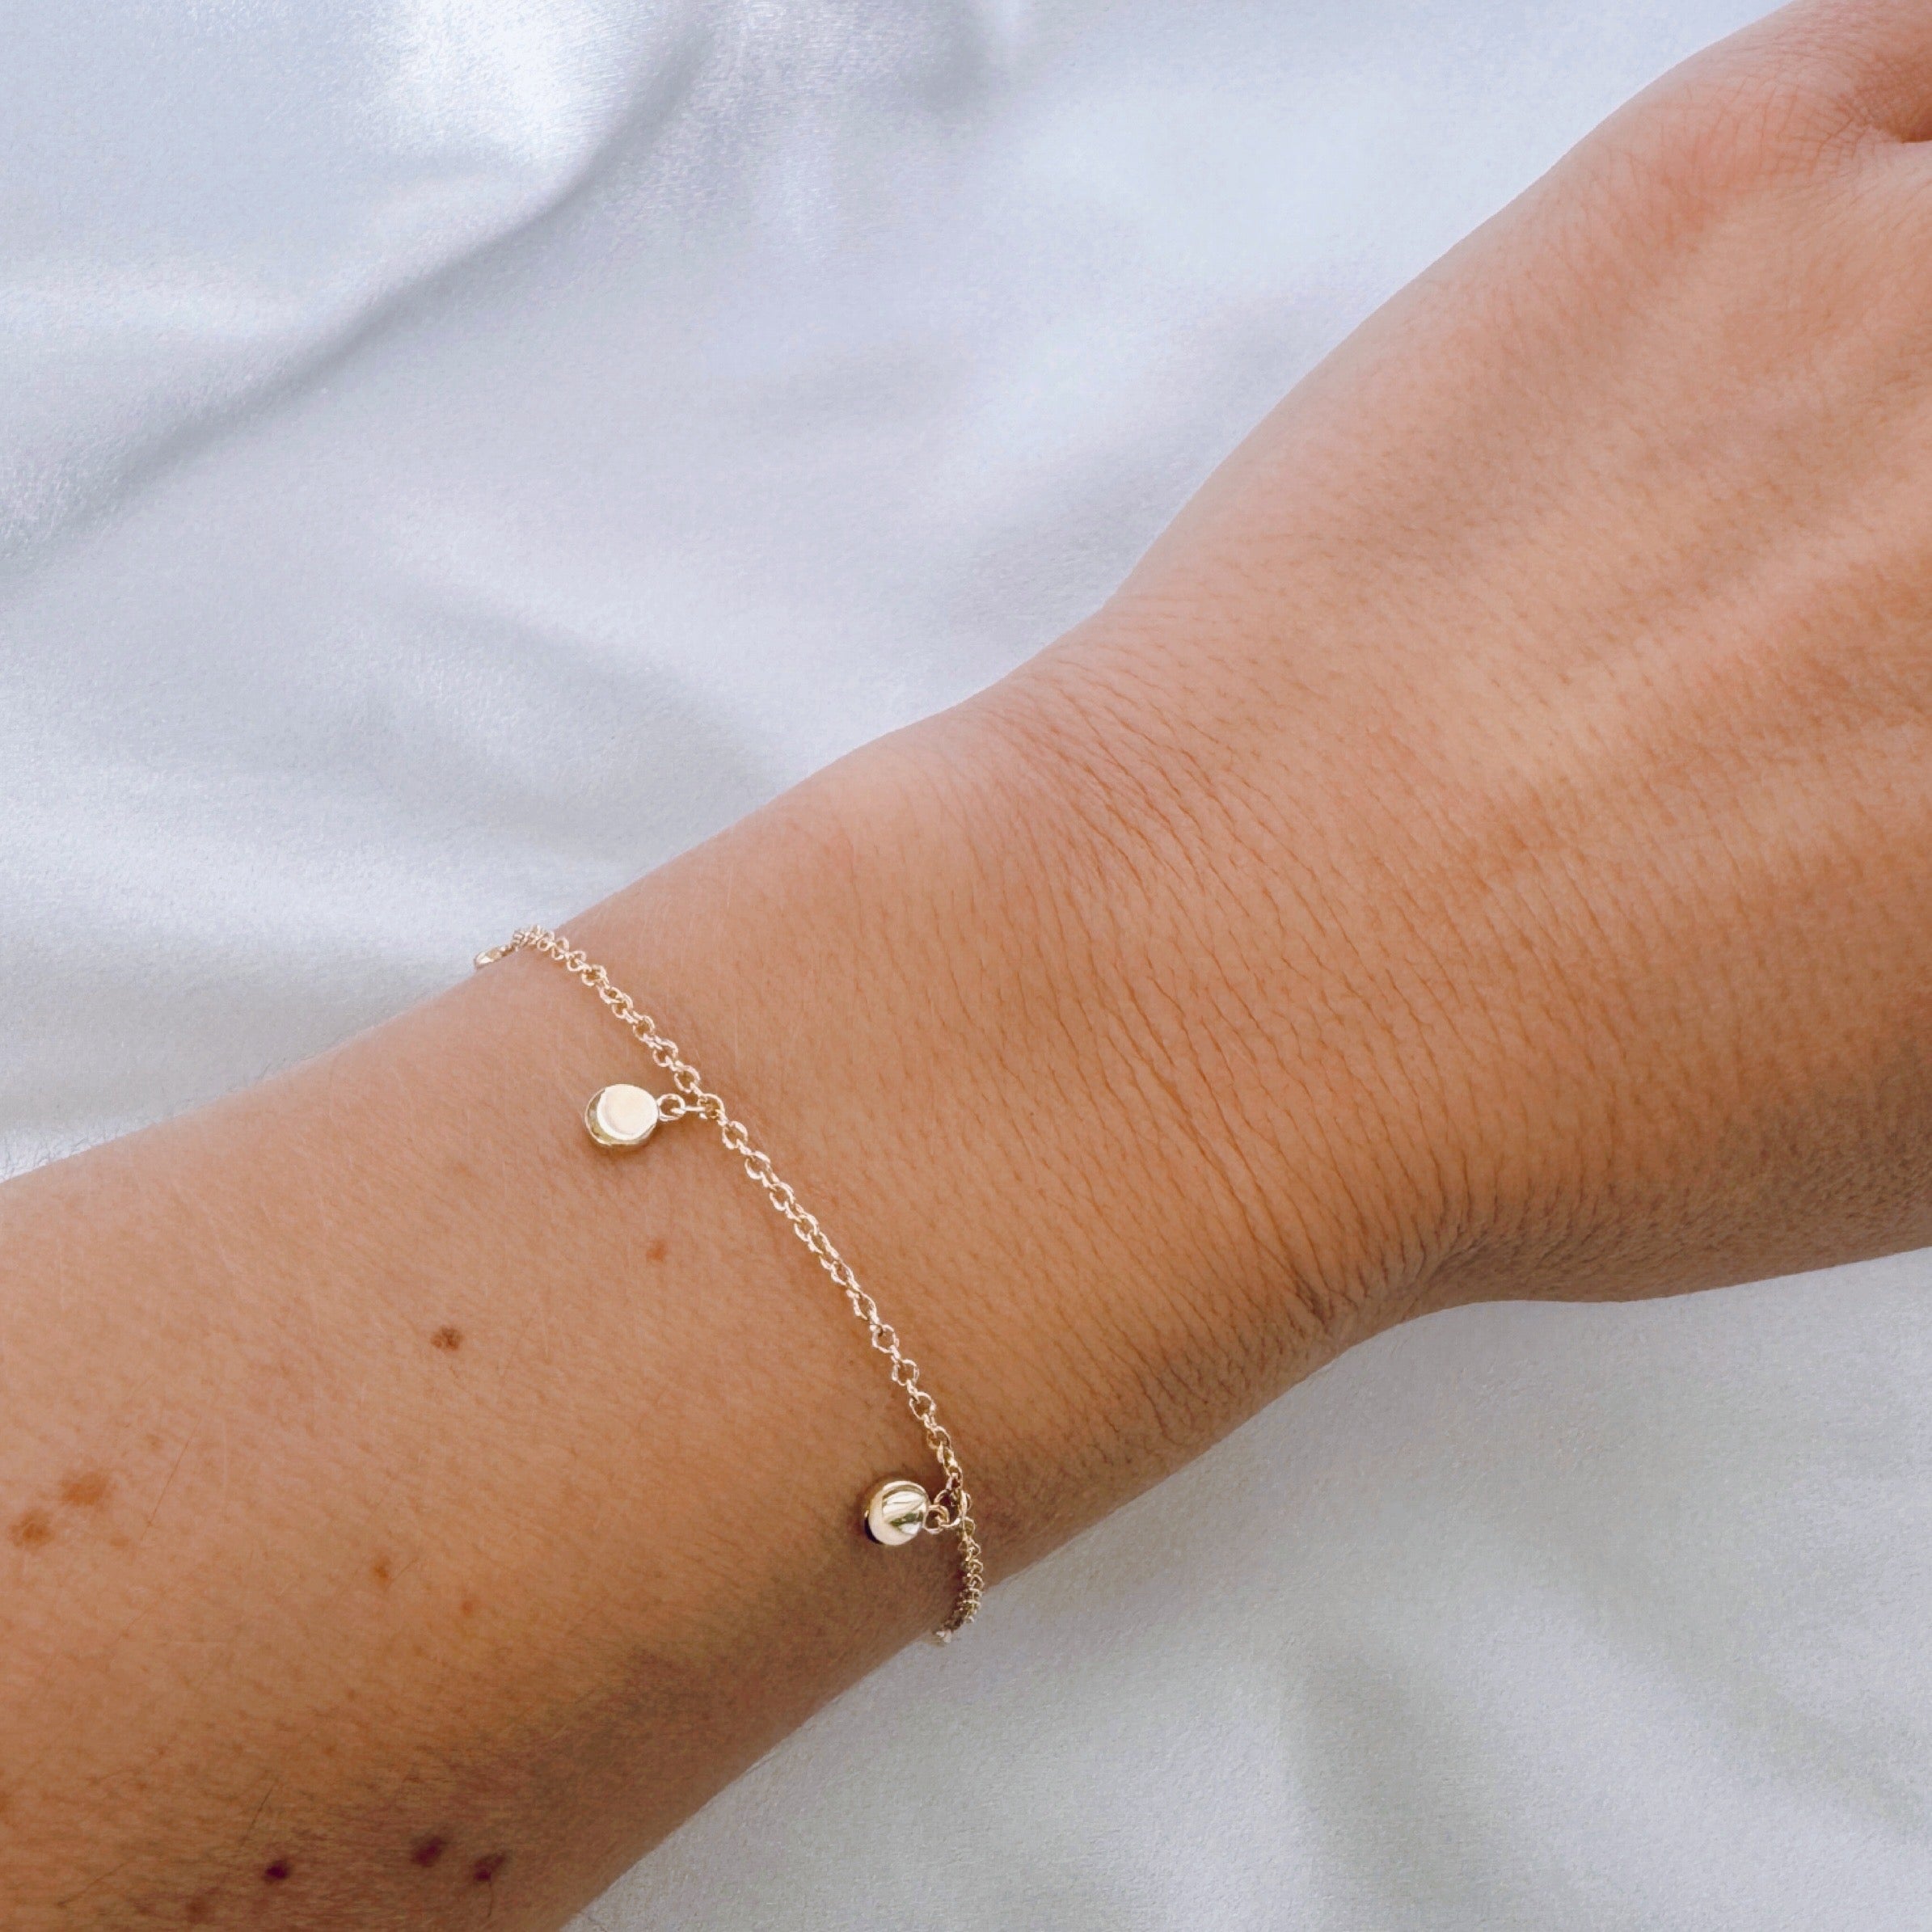 Gold-plated “Tampilles” bracelet